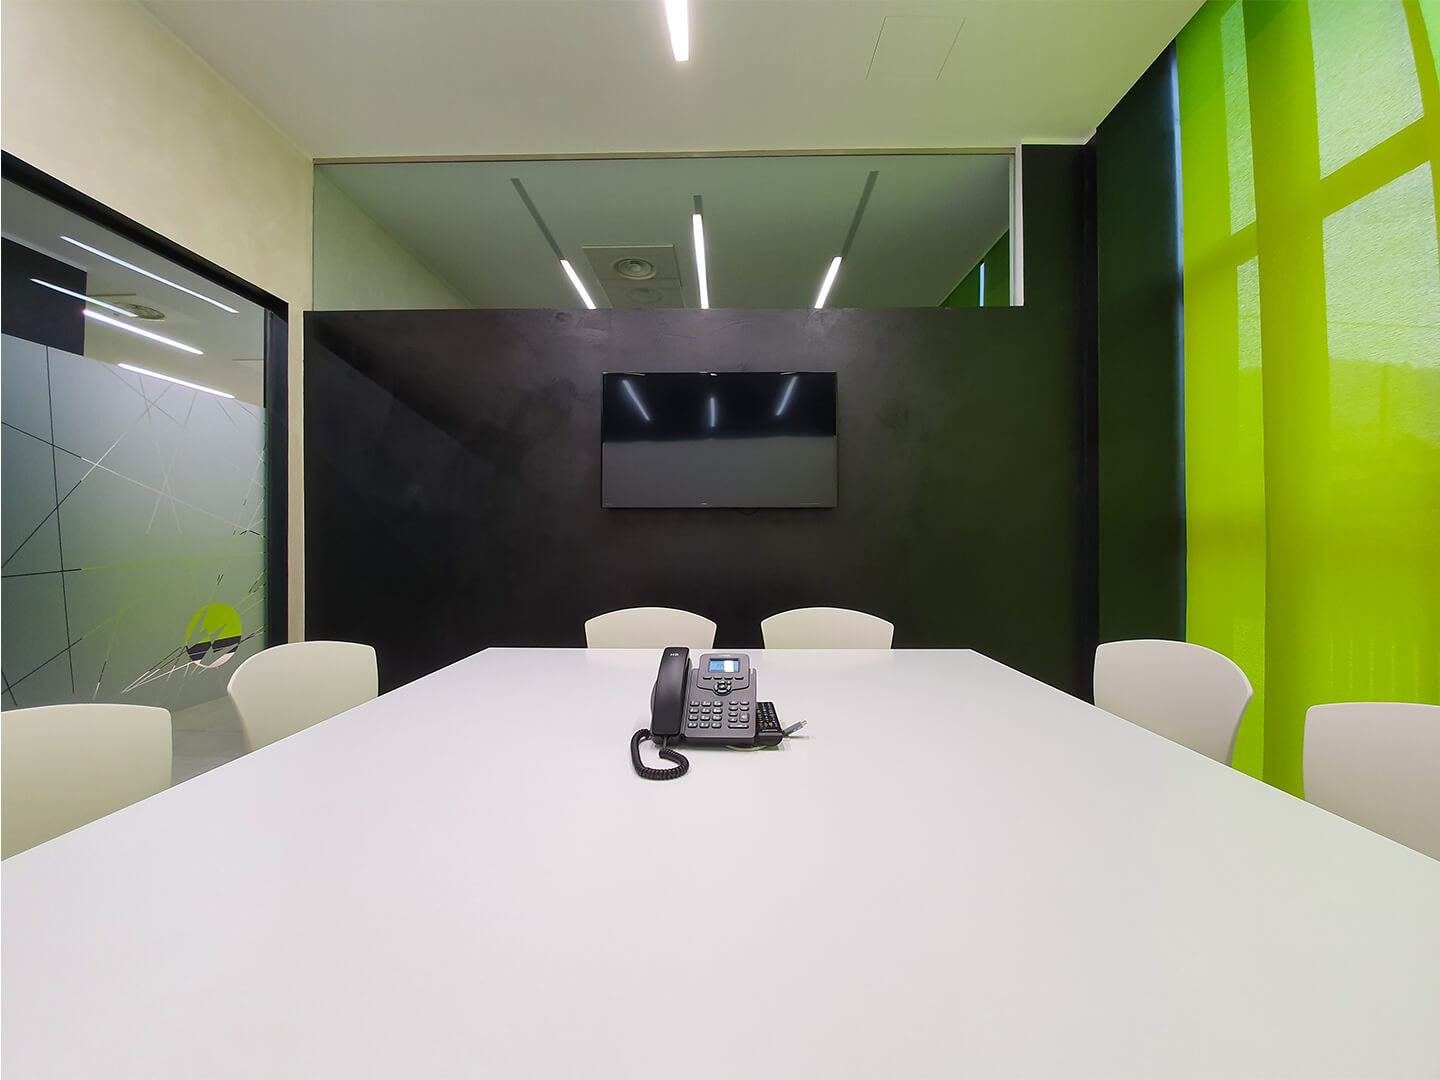 sala riunioni in affitto in provincia di Sondrio, all'interno di Khub - hub innovazione valtellinese